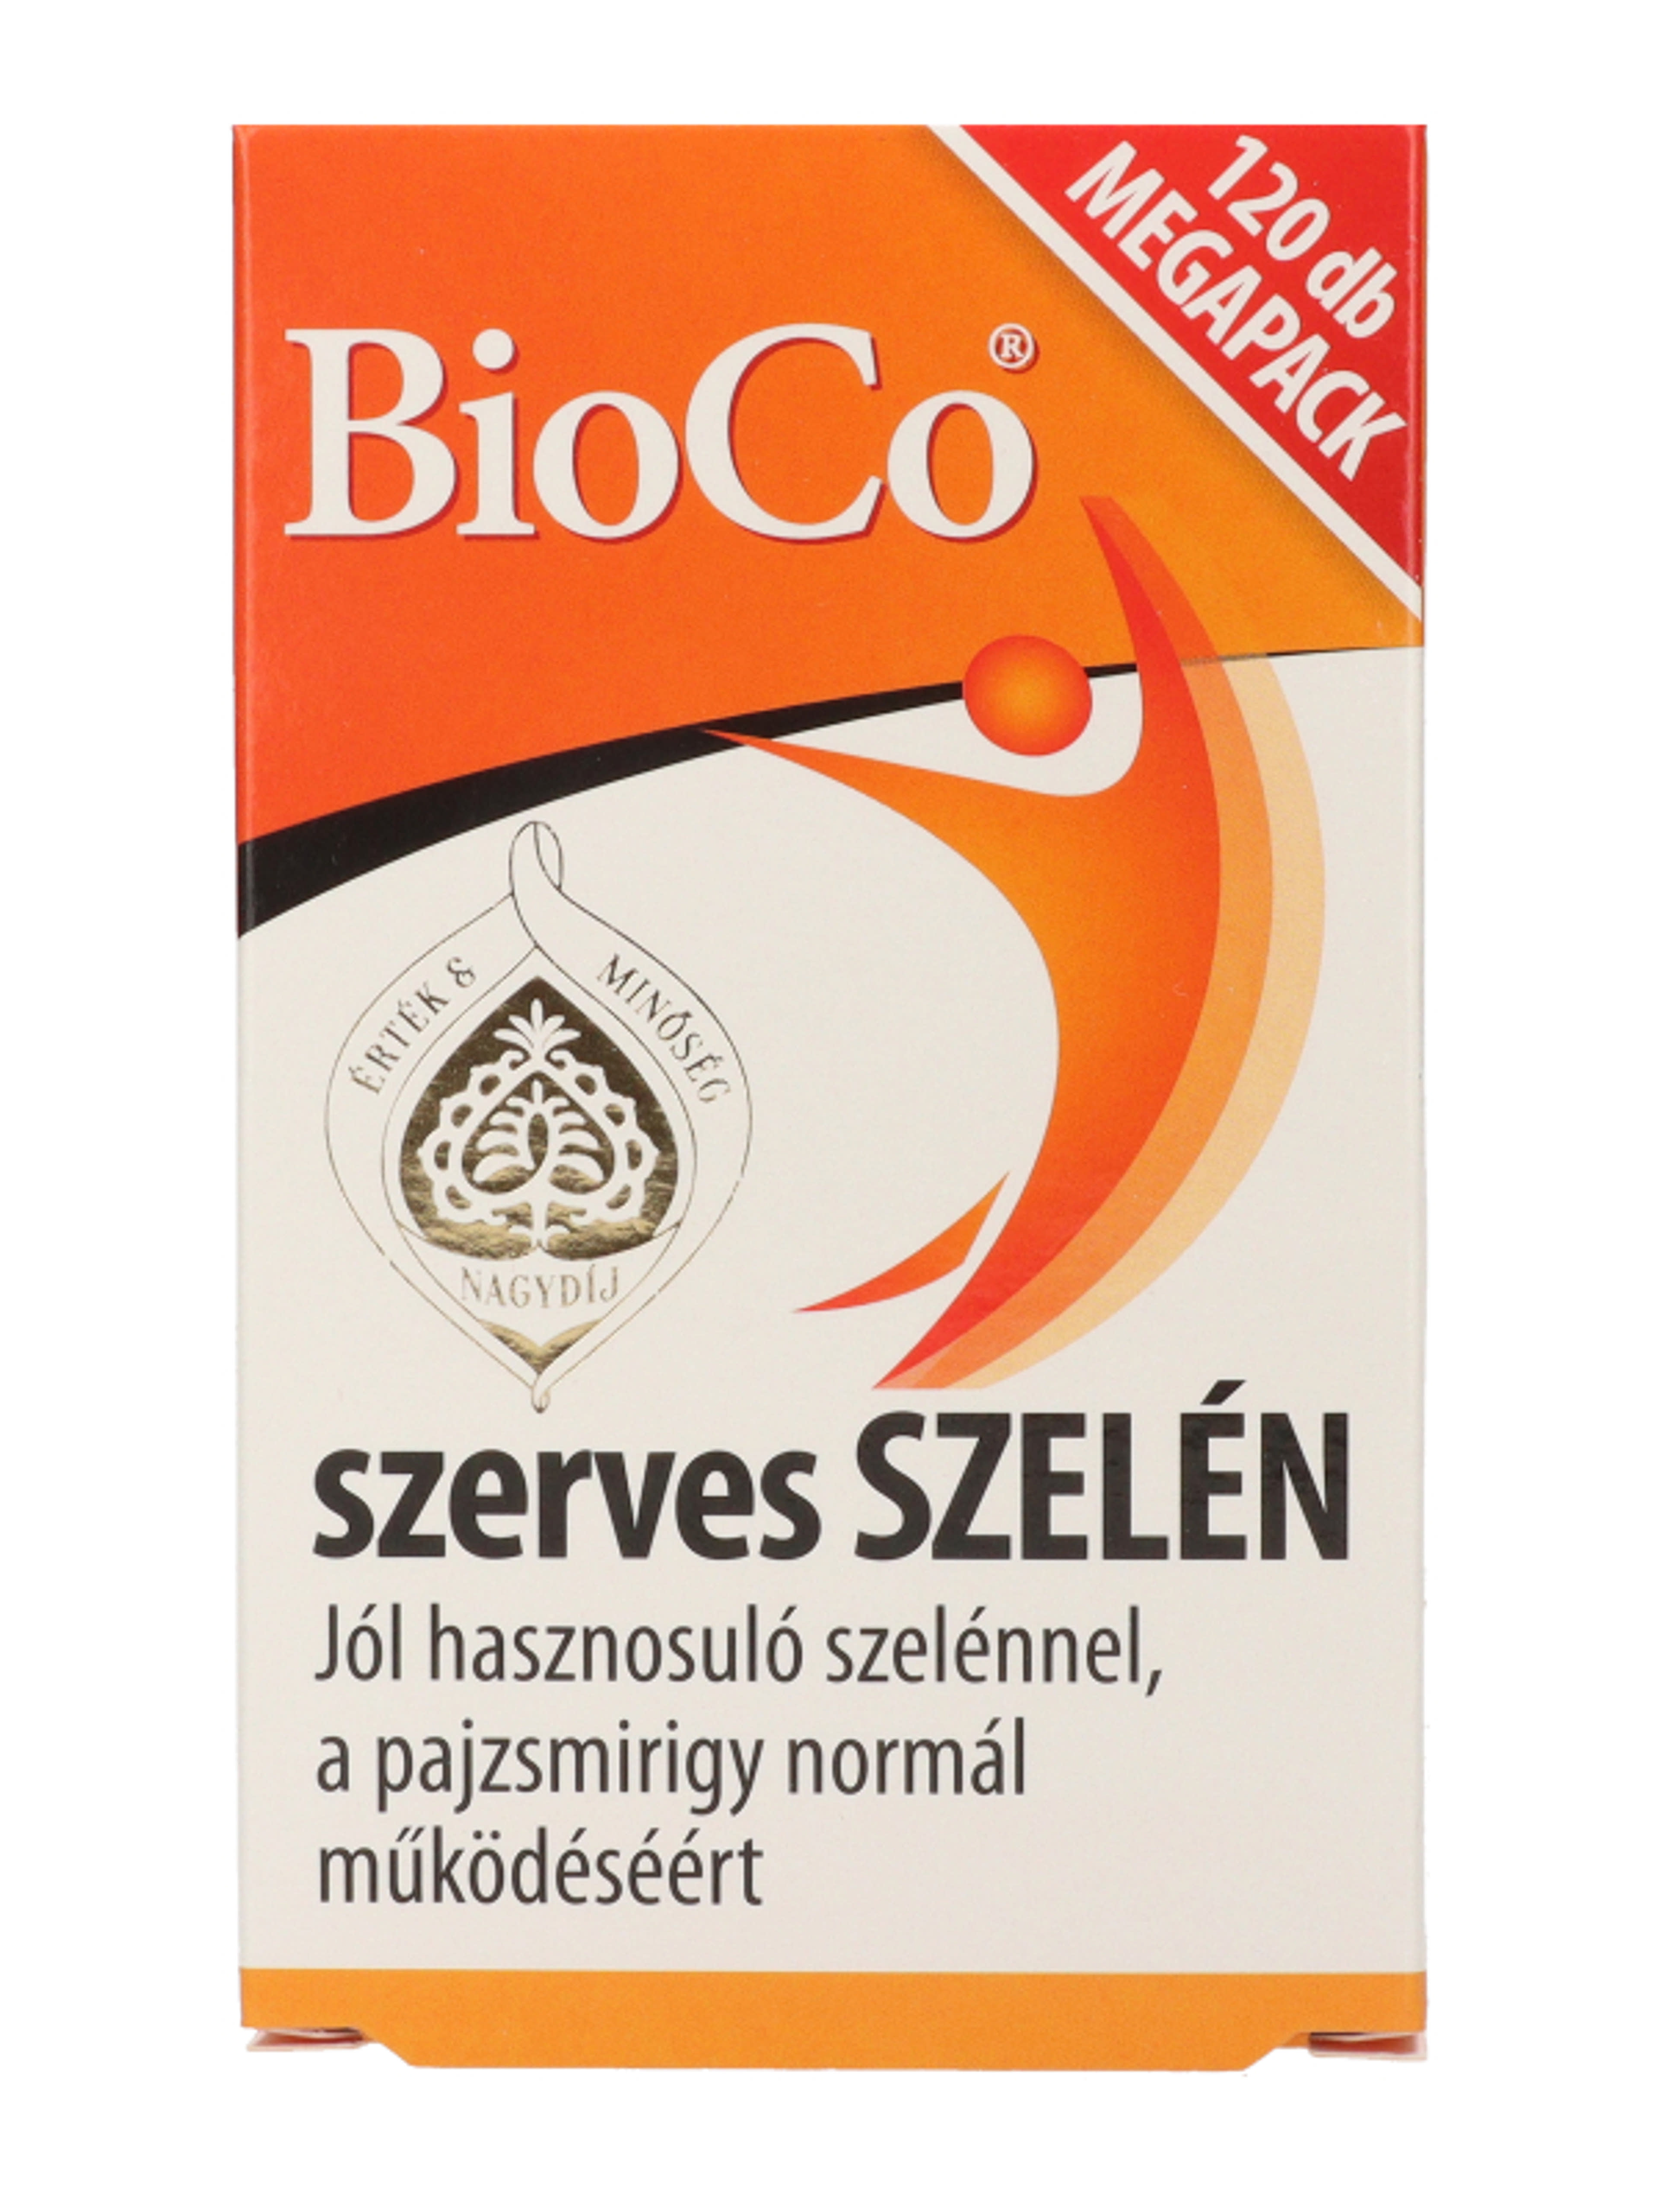 Bioco szerves szelén megapack tabletta - 120 db-4